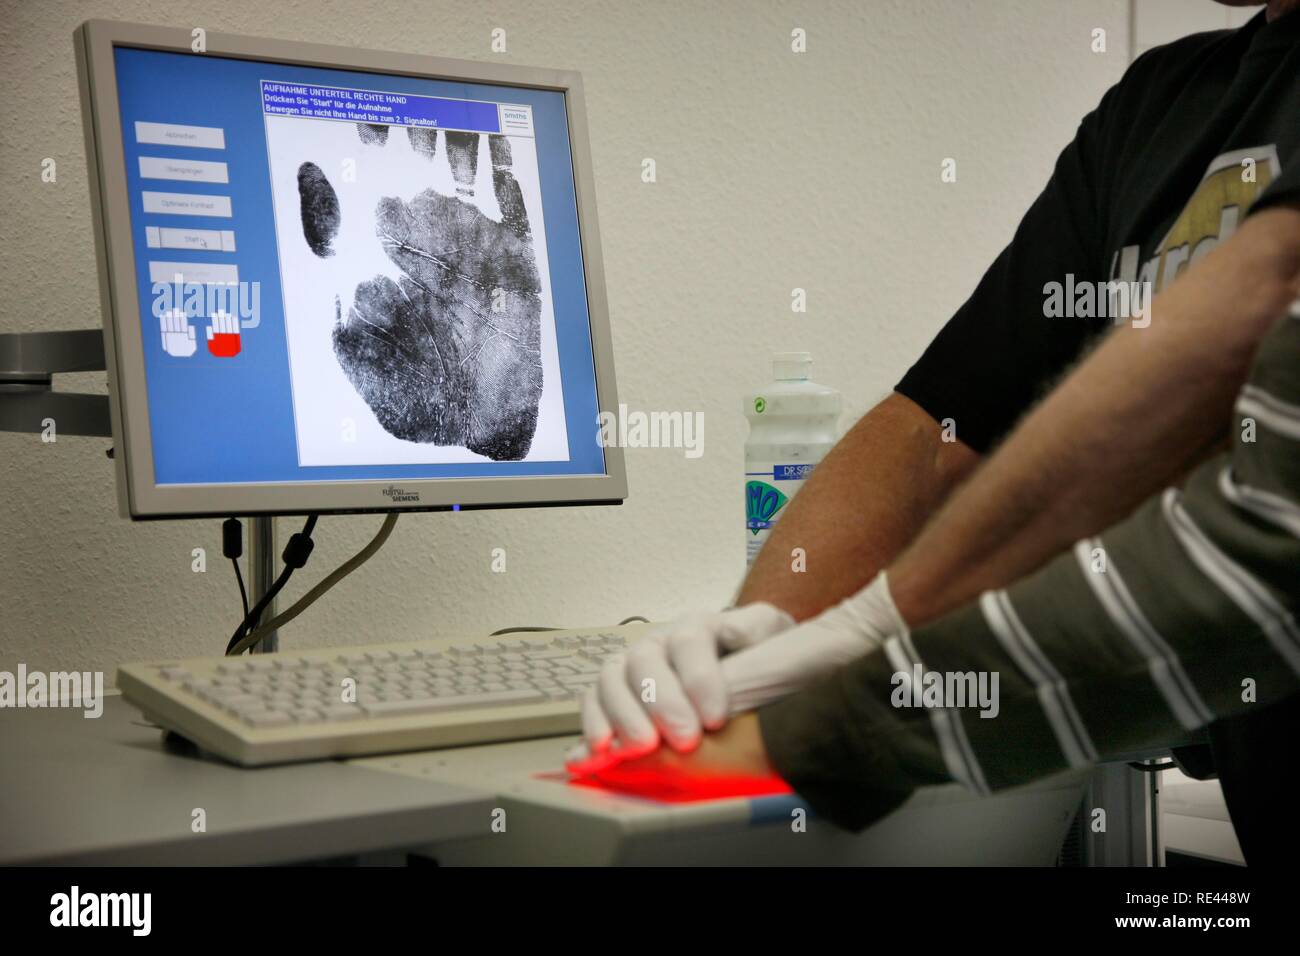 Les empreintes digitales et empreintes de mains est enregistré par scanner numérique, identification physique d'un suspect dans une enquête criminelle Banque D'Images